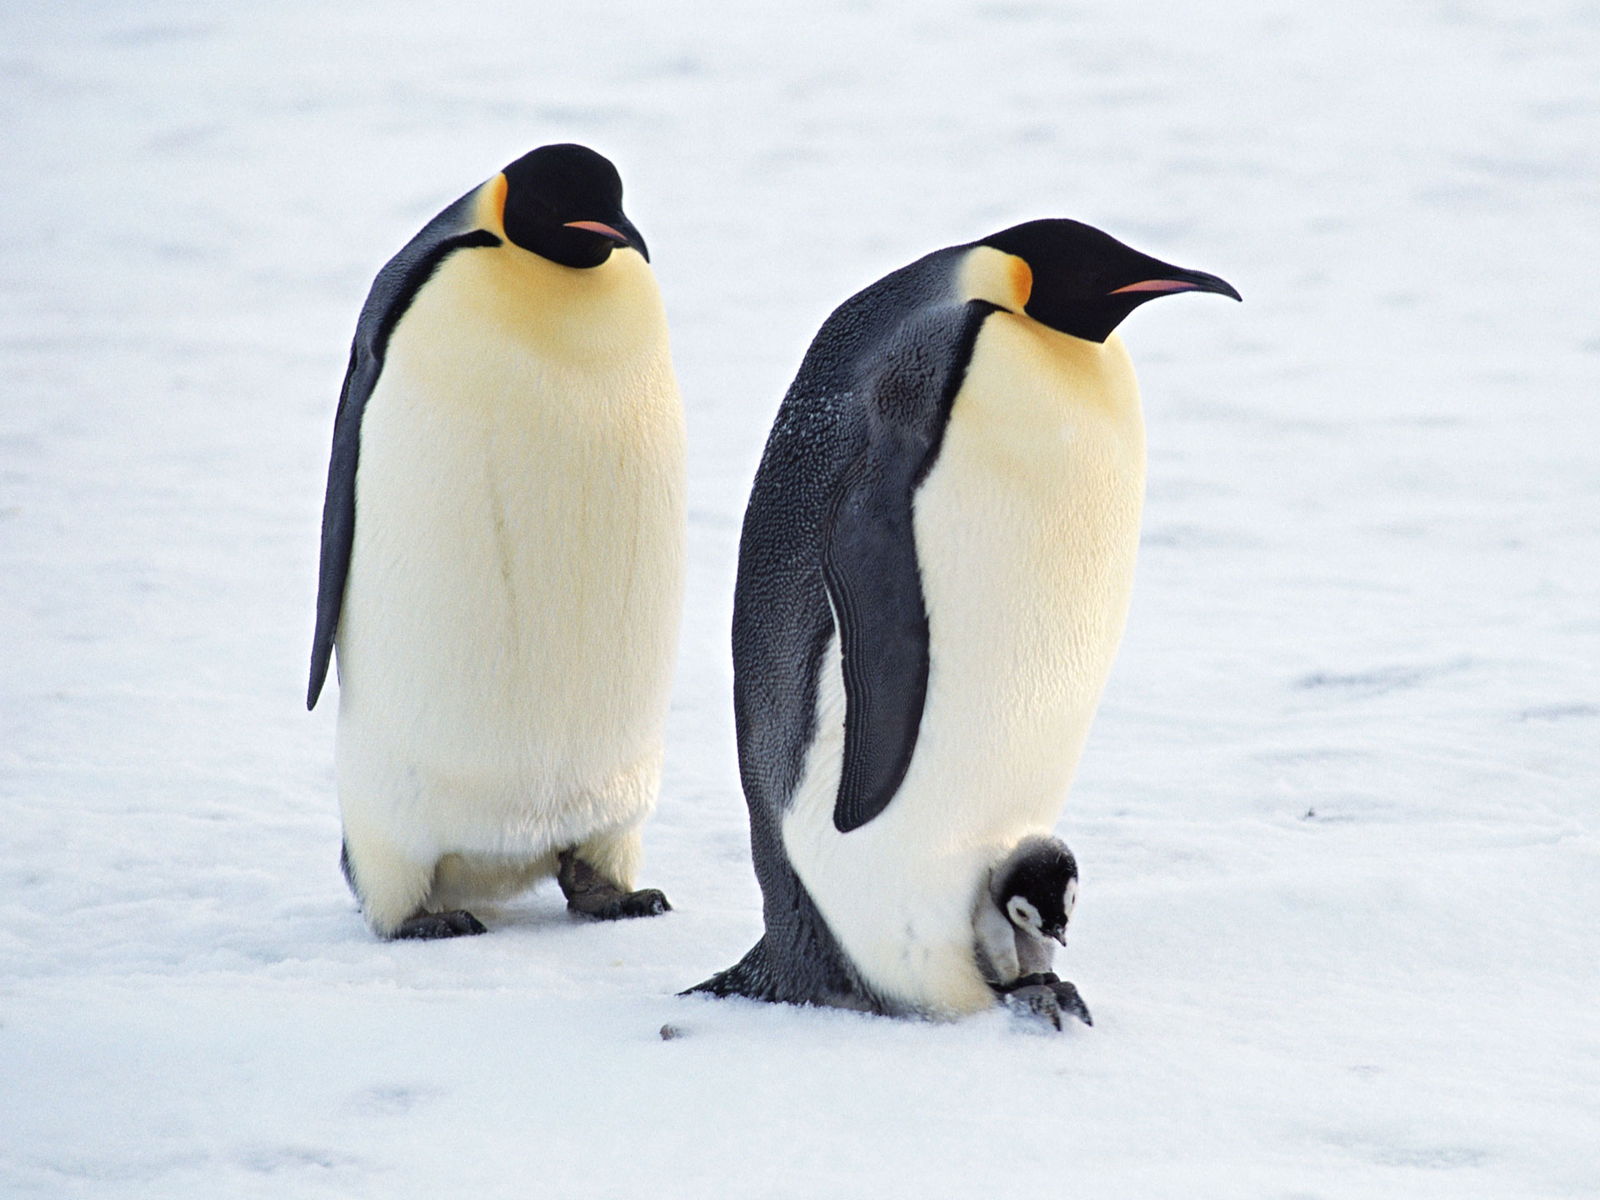 Tổng hợp các hình ảnh về chim cánh cụt dễ thương – Đặc điểm của loài chim cánh cụt - [Kích thước hình ảnh: 1600x1200 px]